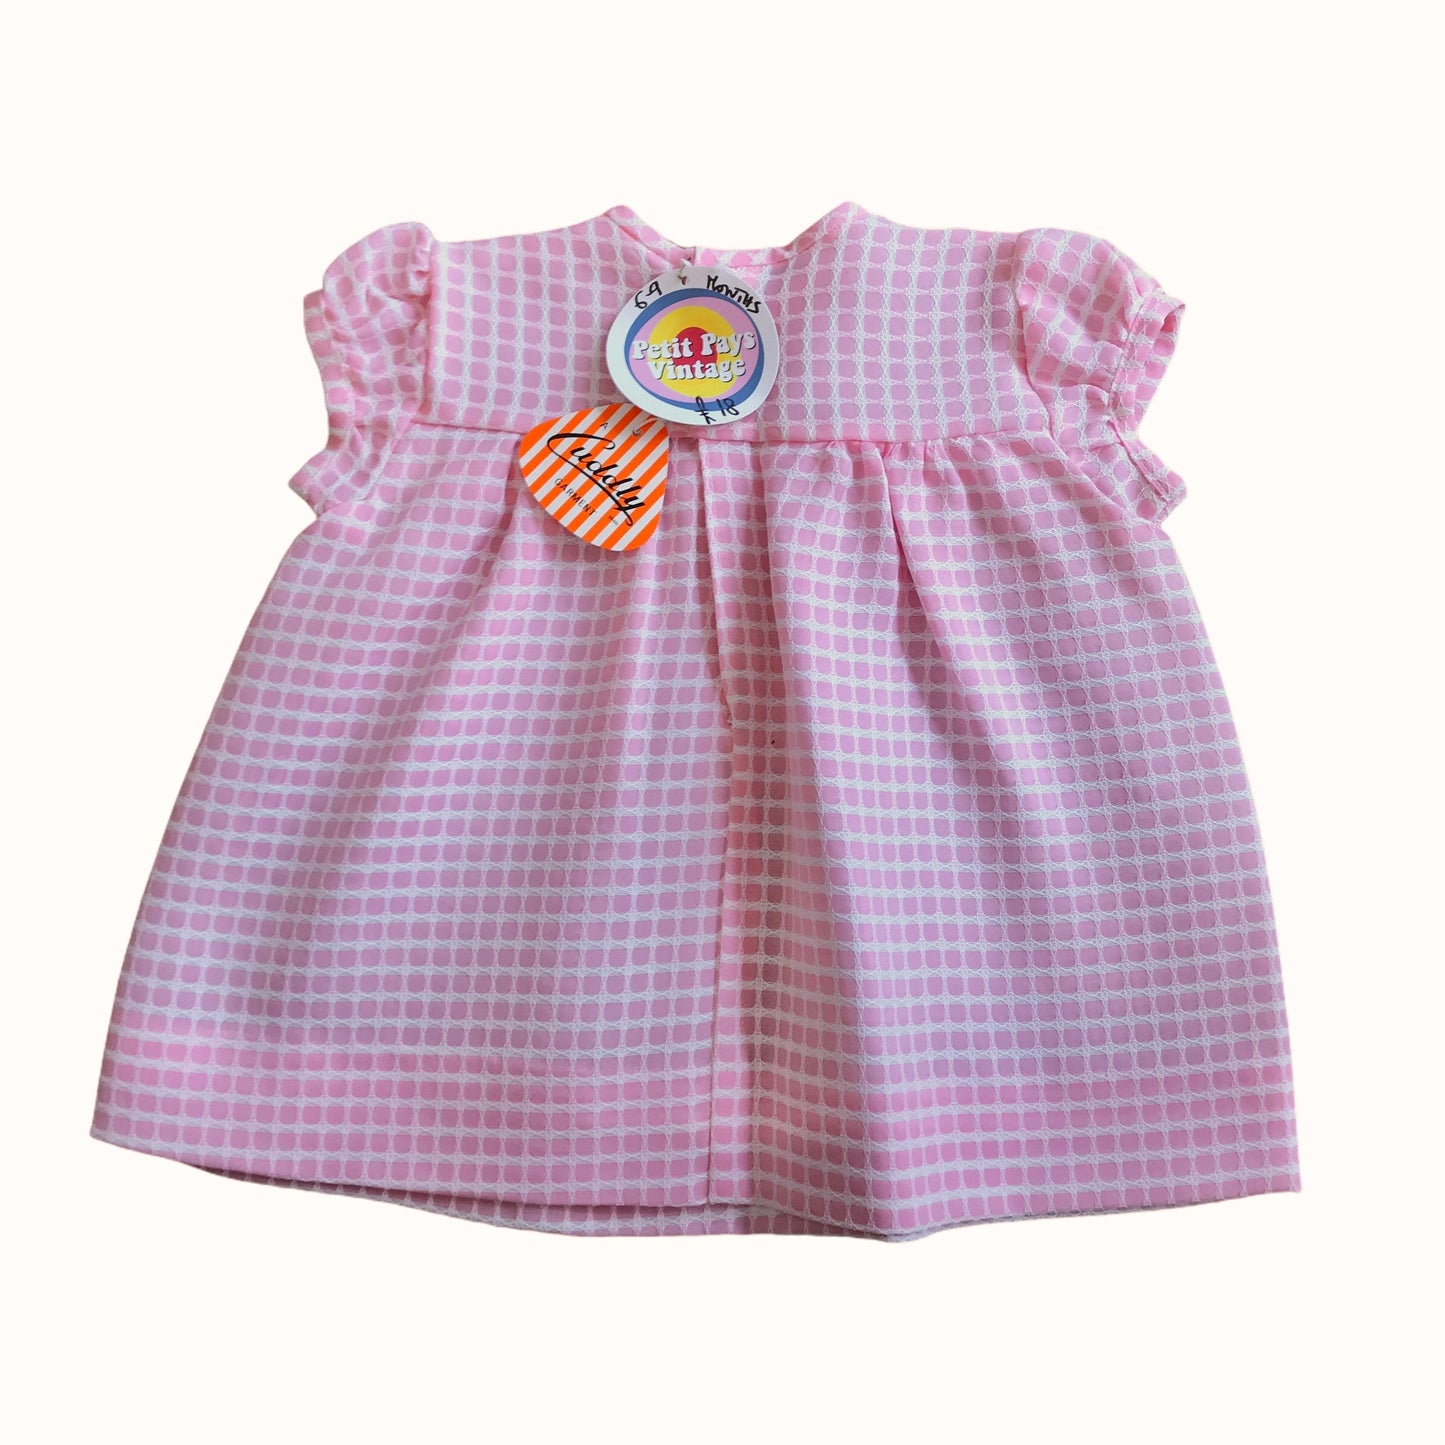 Vintage 60s Baby Pink Textured Dress British Made 6-9 Months